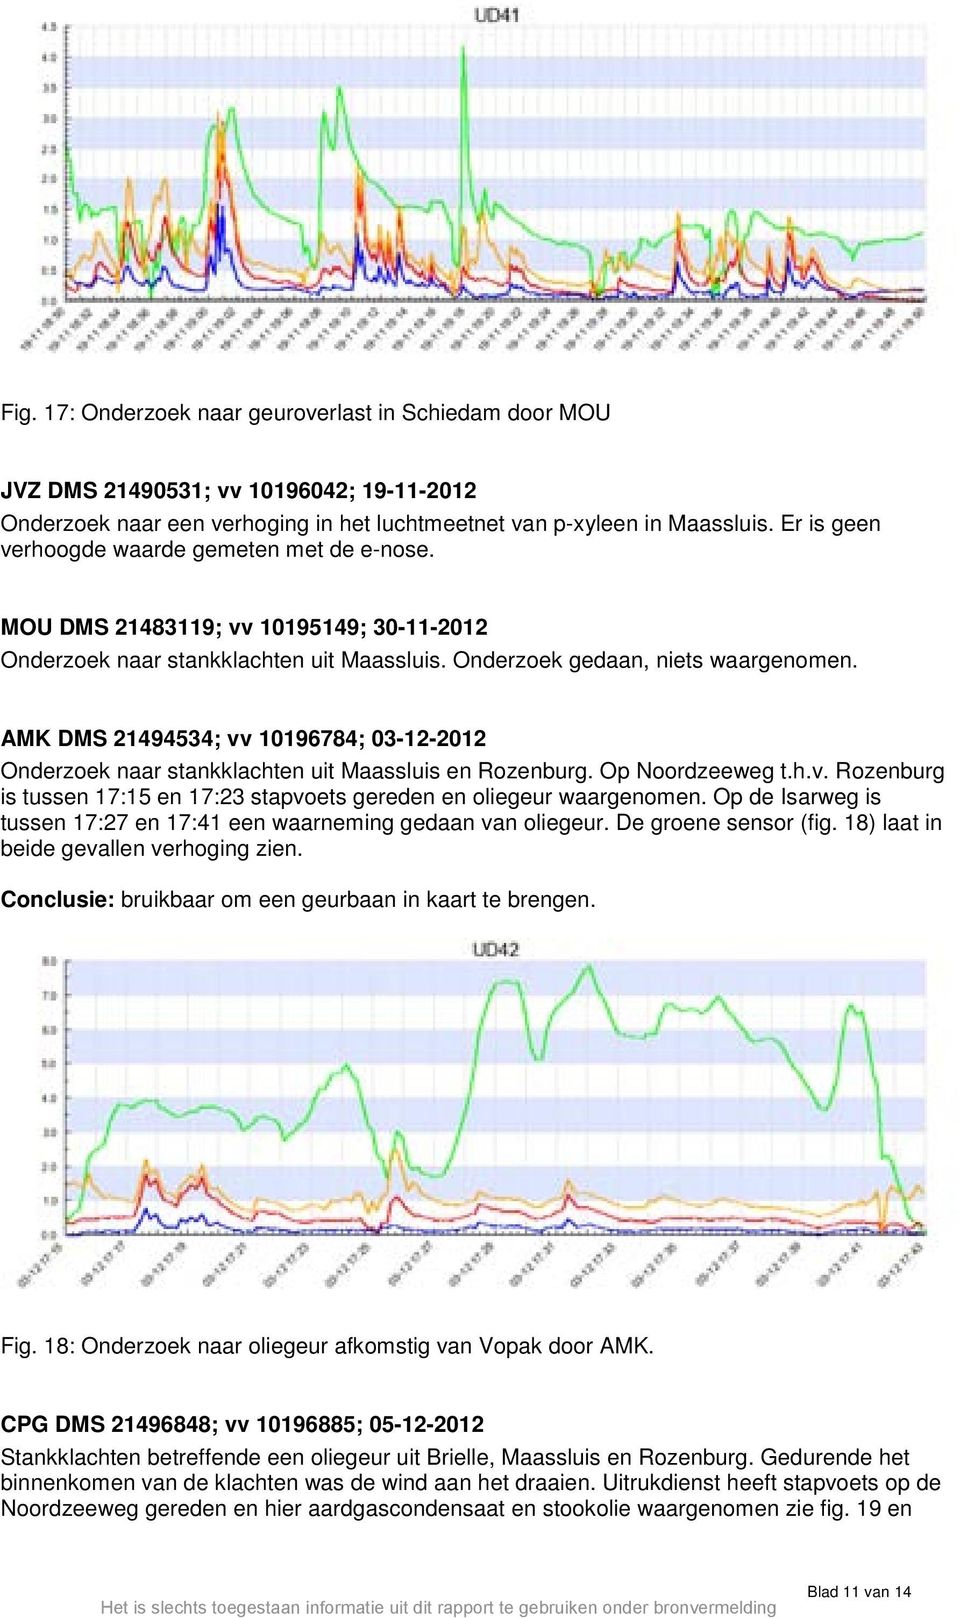 AMK DMS 21494534; vv 10196784; 03-12-2012 Onderzoek naar stankklachten uit Maassluis en Rozenburg. Op Noordzeeweg t.h.v. Rozenburg is tussen 17:15 en 17:23 stapvoets gereden en oliegeur waargenomen.